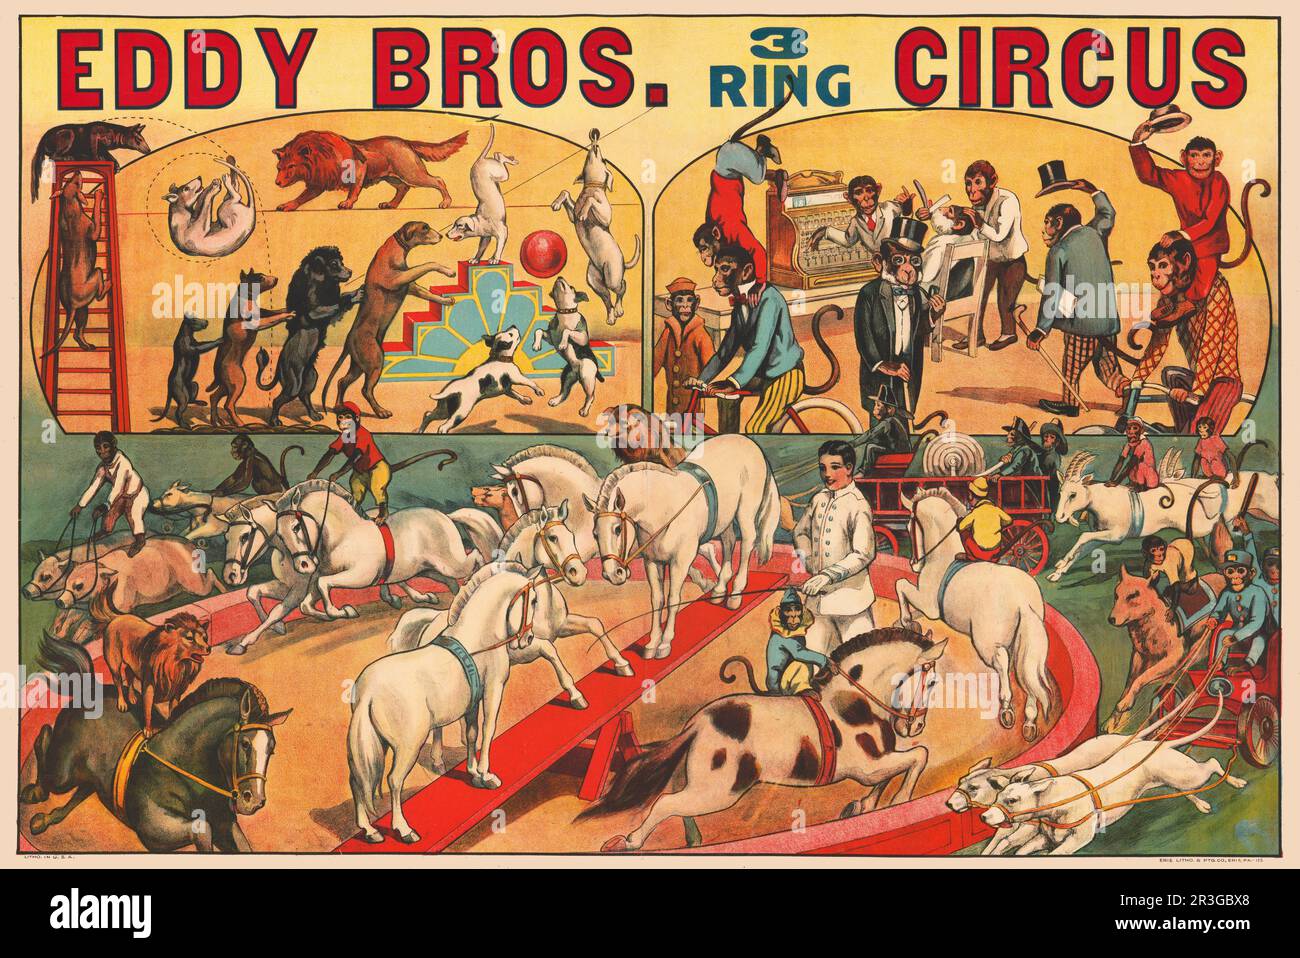 Affiche de cirque Eddy Brothers vintage montrant diverses scènes de cirque. Banque D'Images